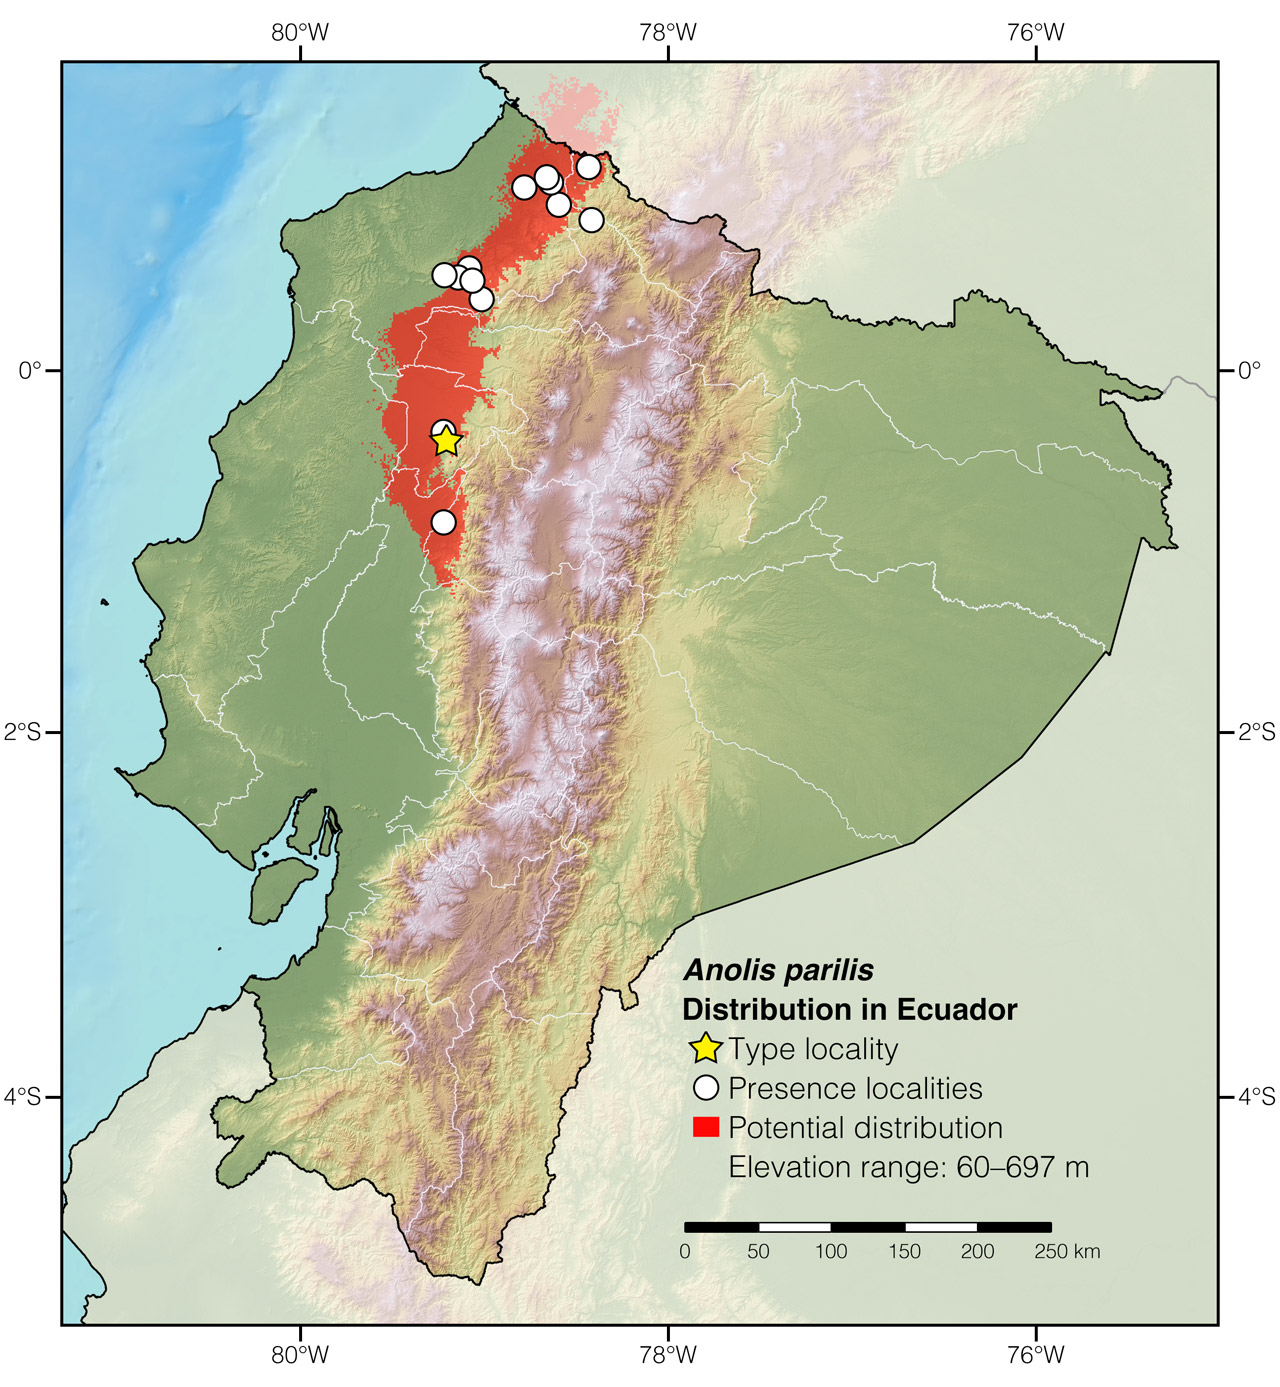 Distribution of Anolis parilis in Ecuador